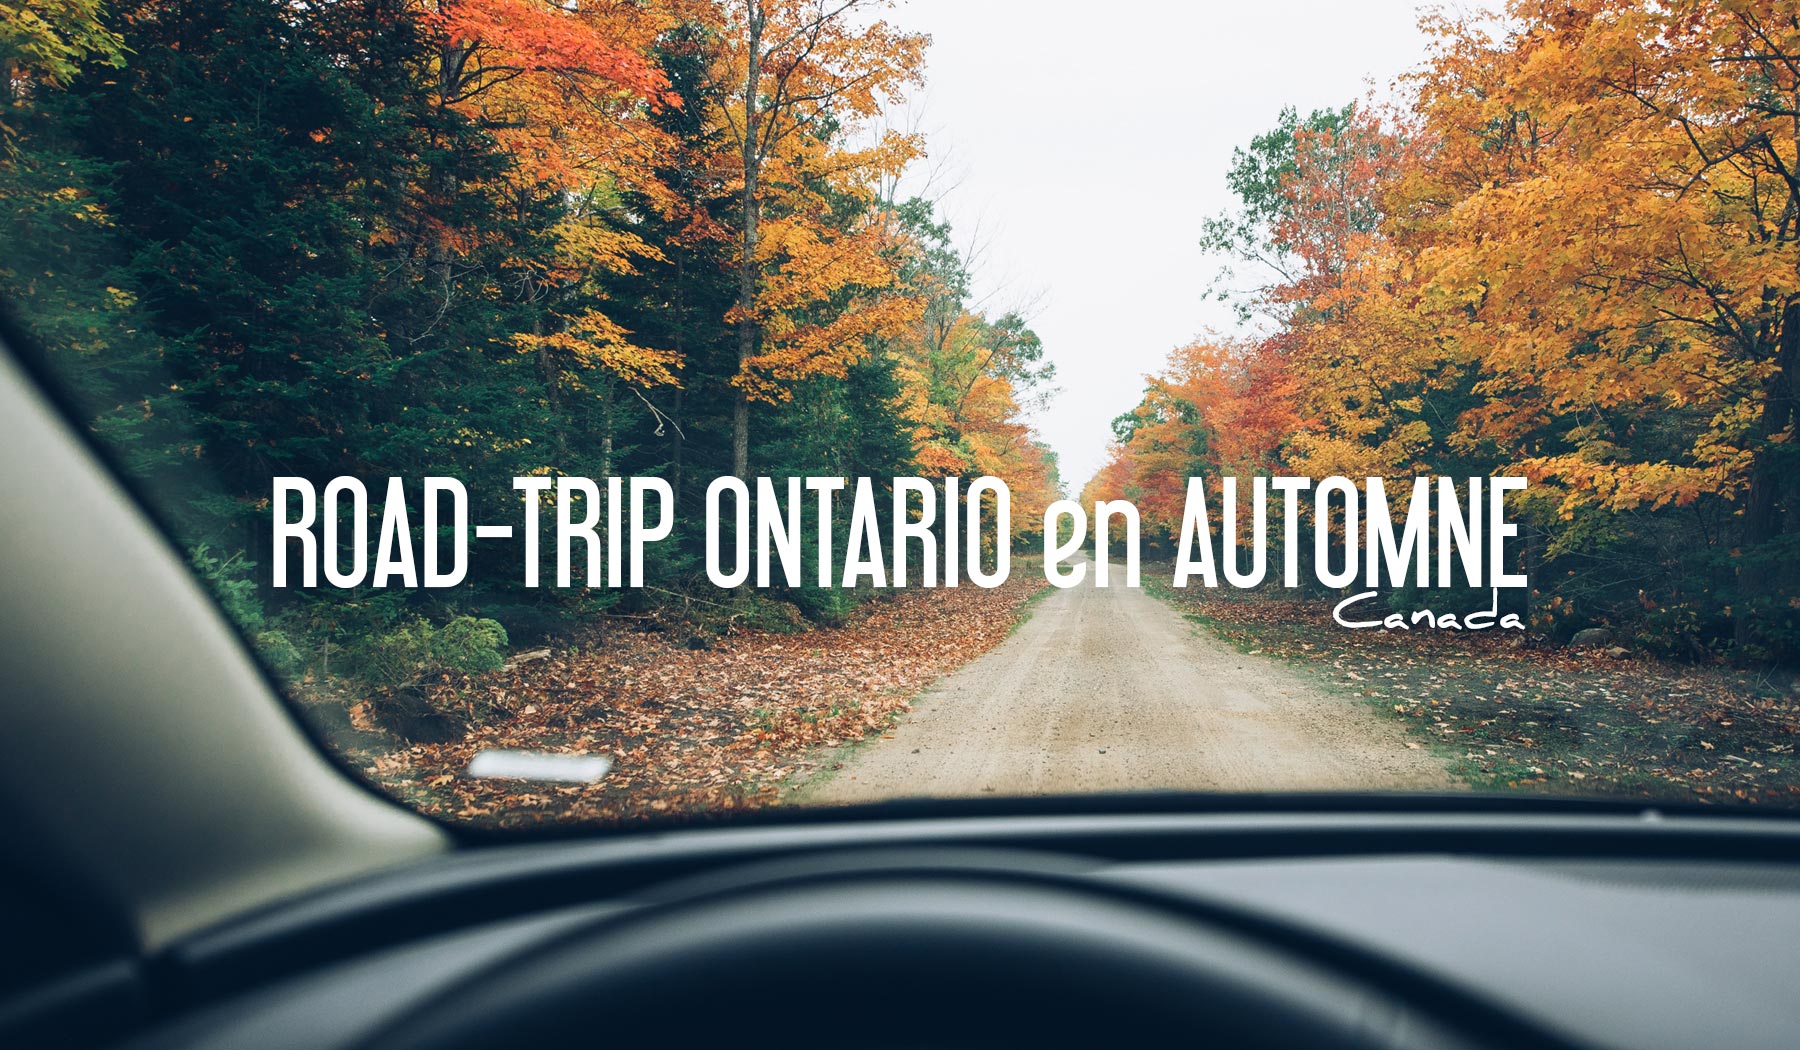 Road Trip Ontario Automne